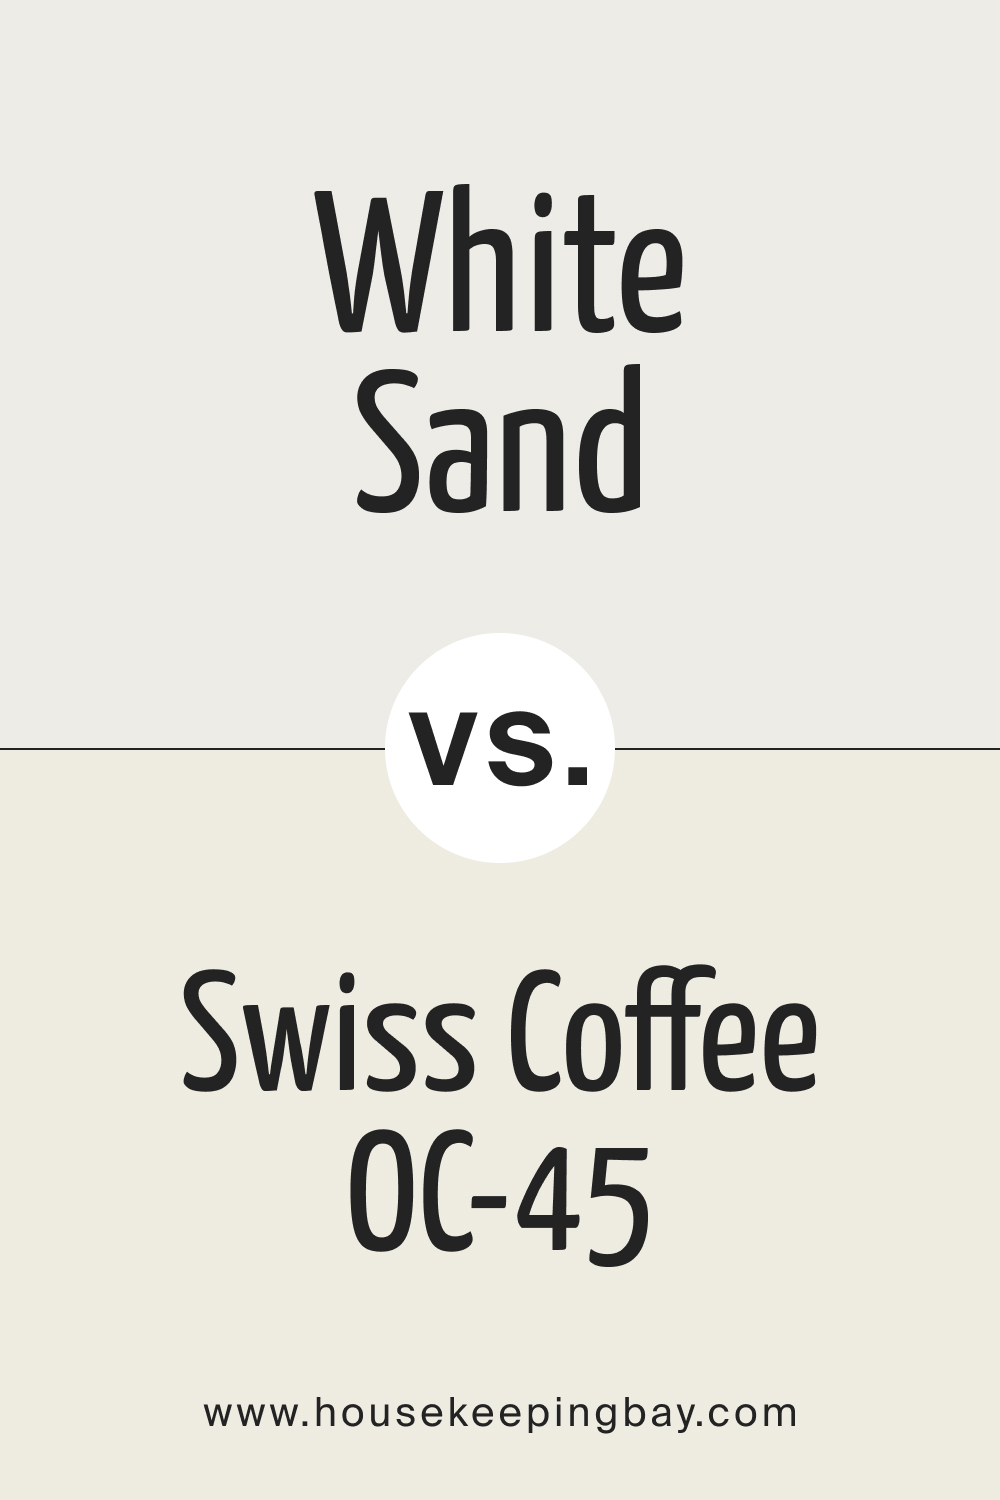 White Sand SW 9582 vs Swiss Coffee OC 45